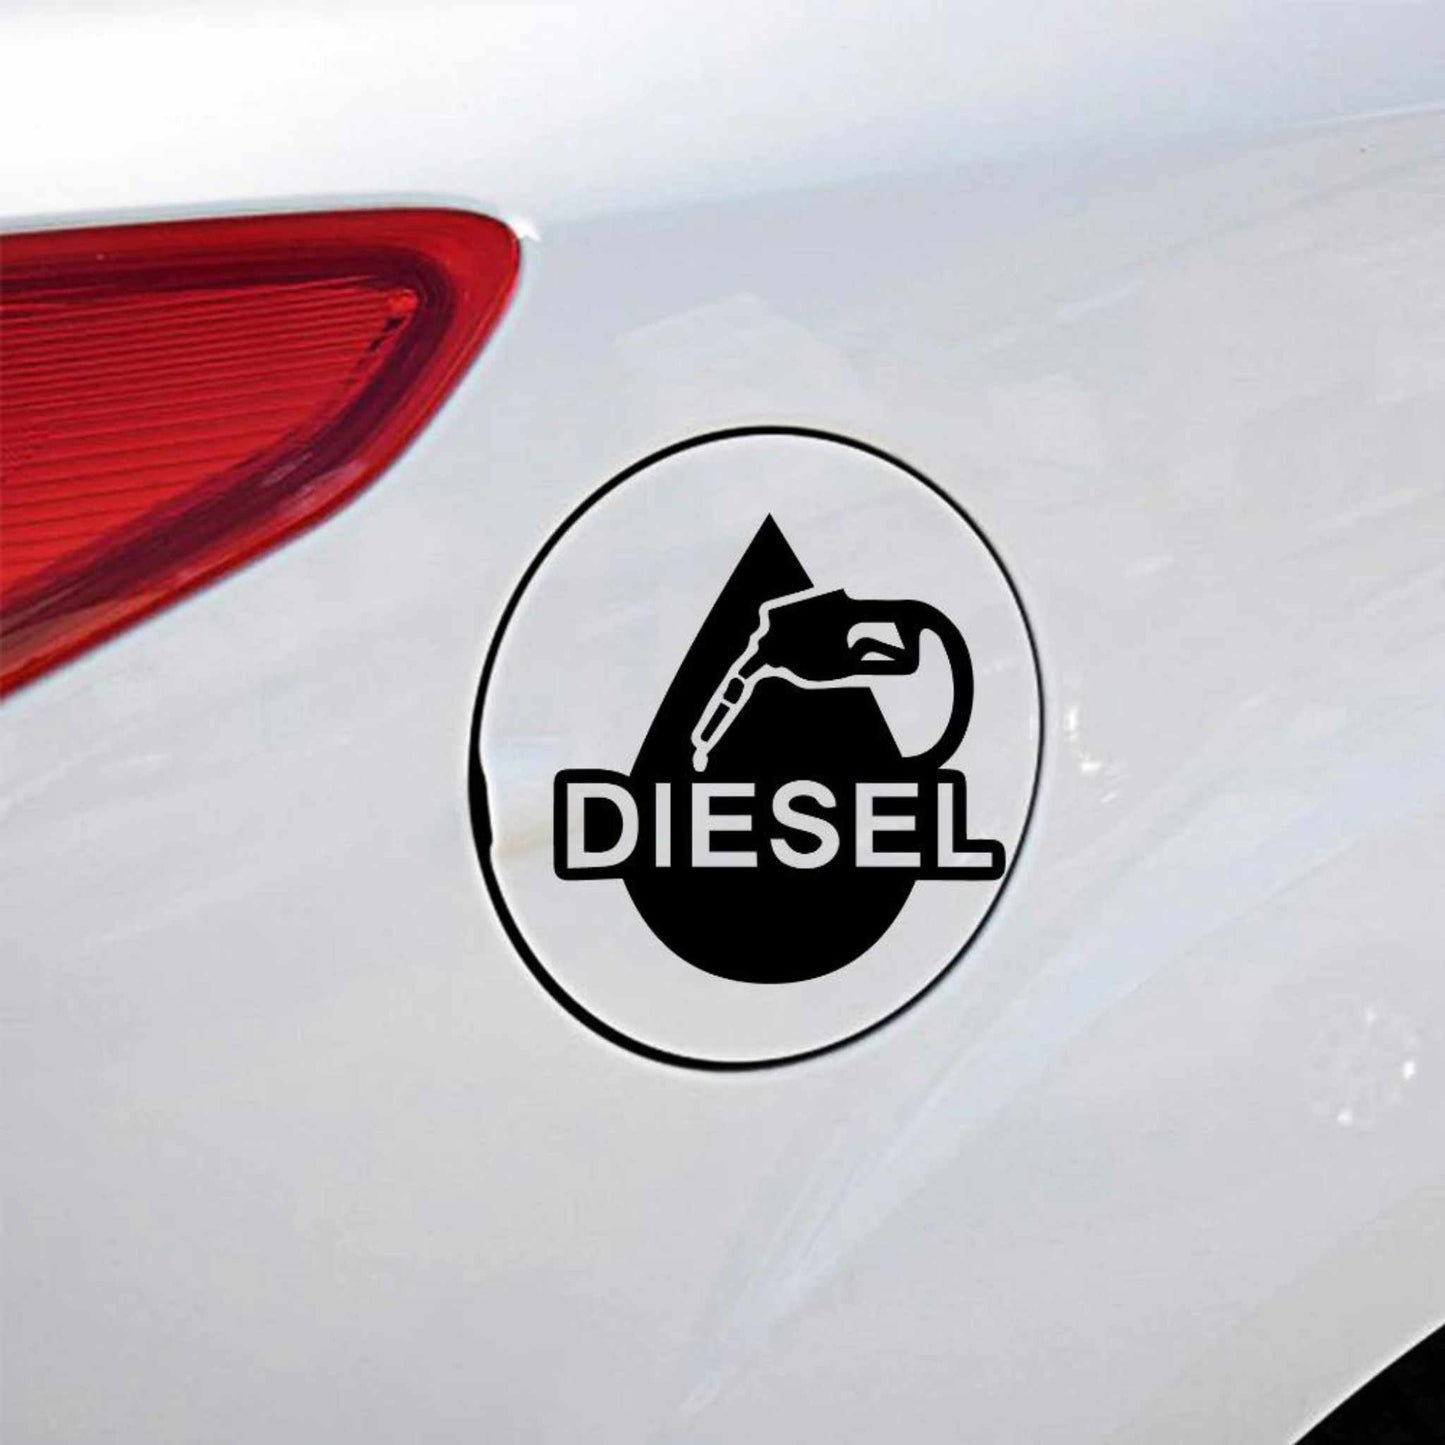 Sticker clapete rezervor auto, personalizat cu model "Diesel", din autocolant oracal de cea mai buna calitate, negru.